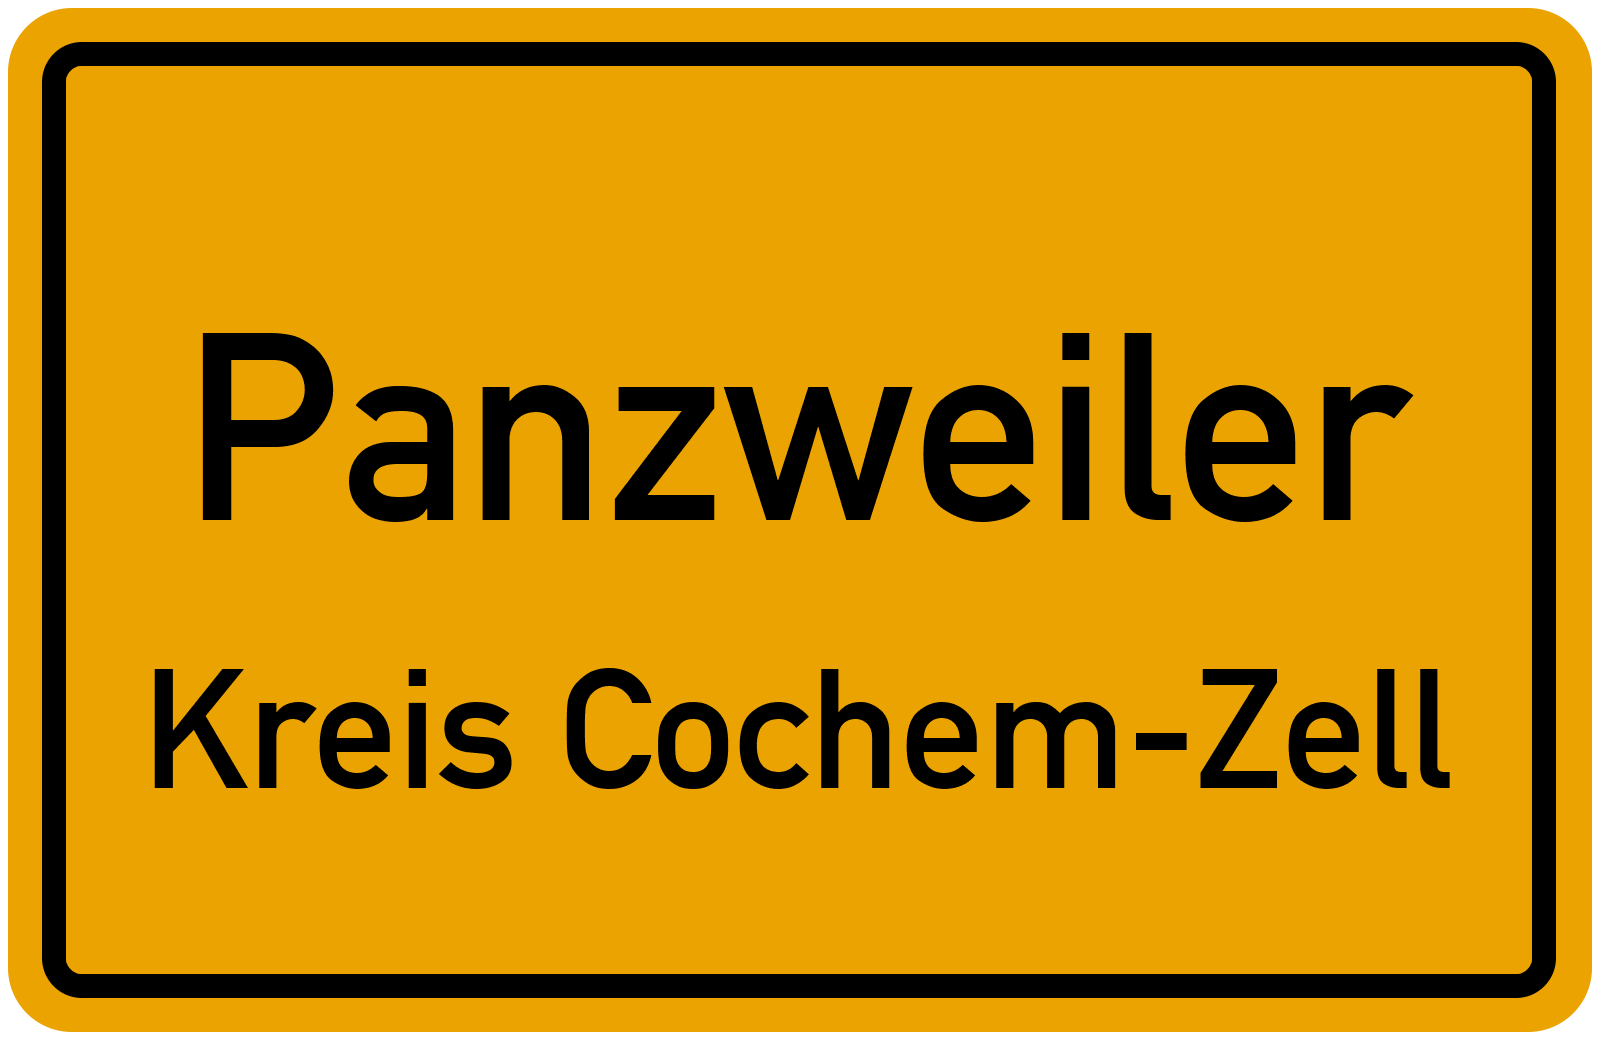 Panzweiler - Kreis Cochem-Zell